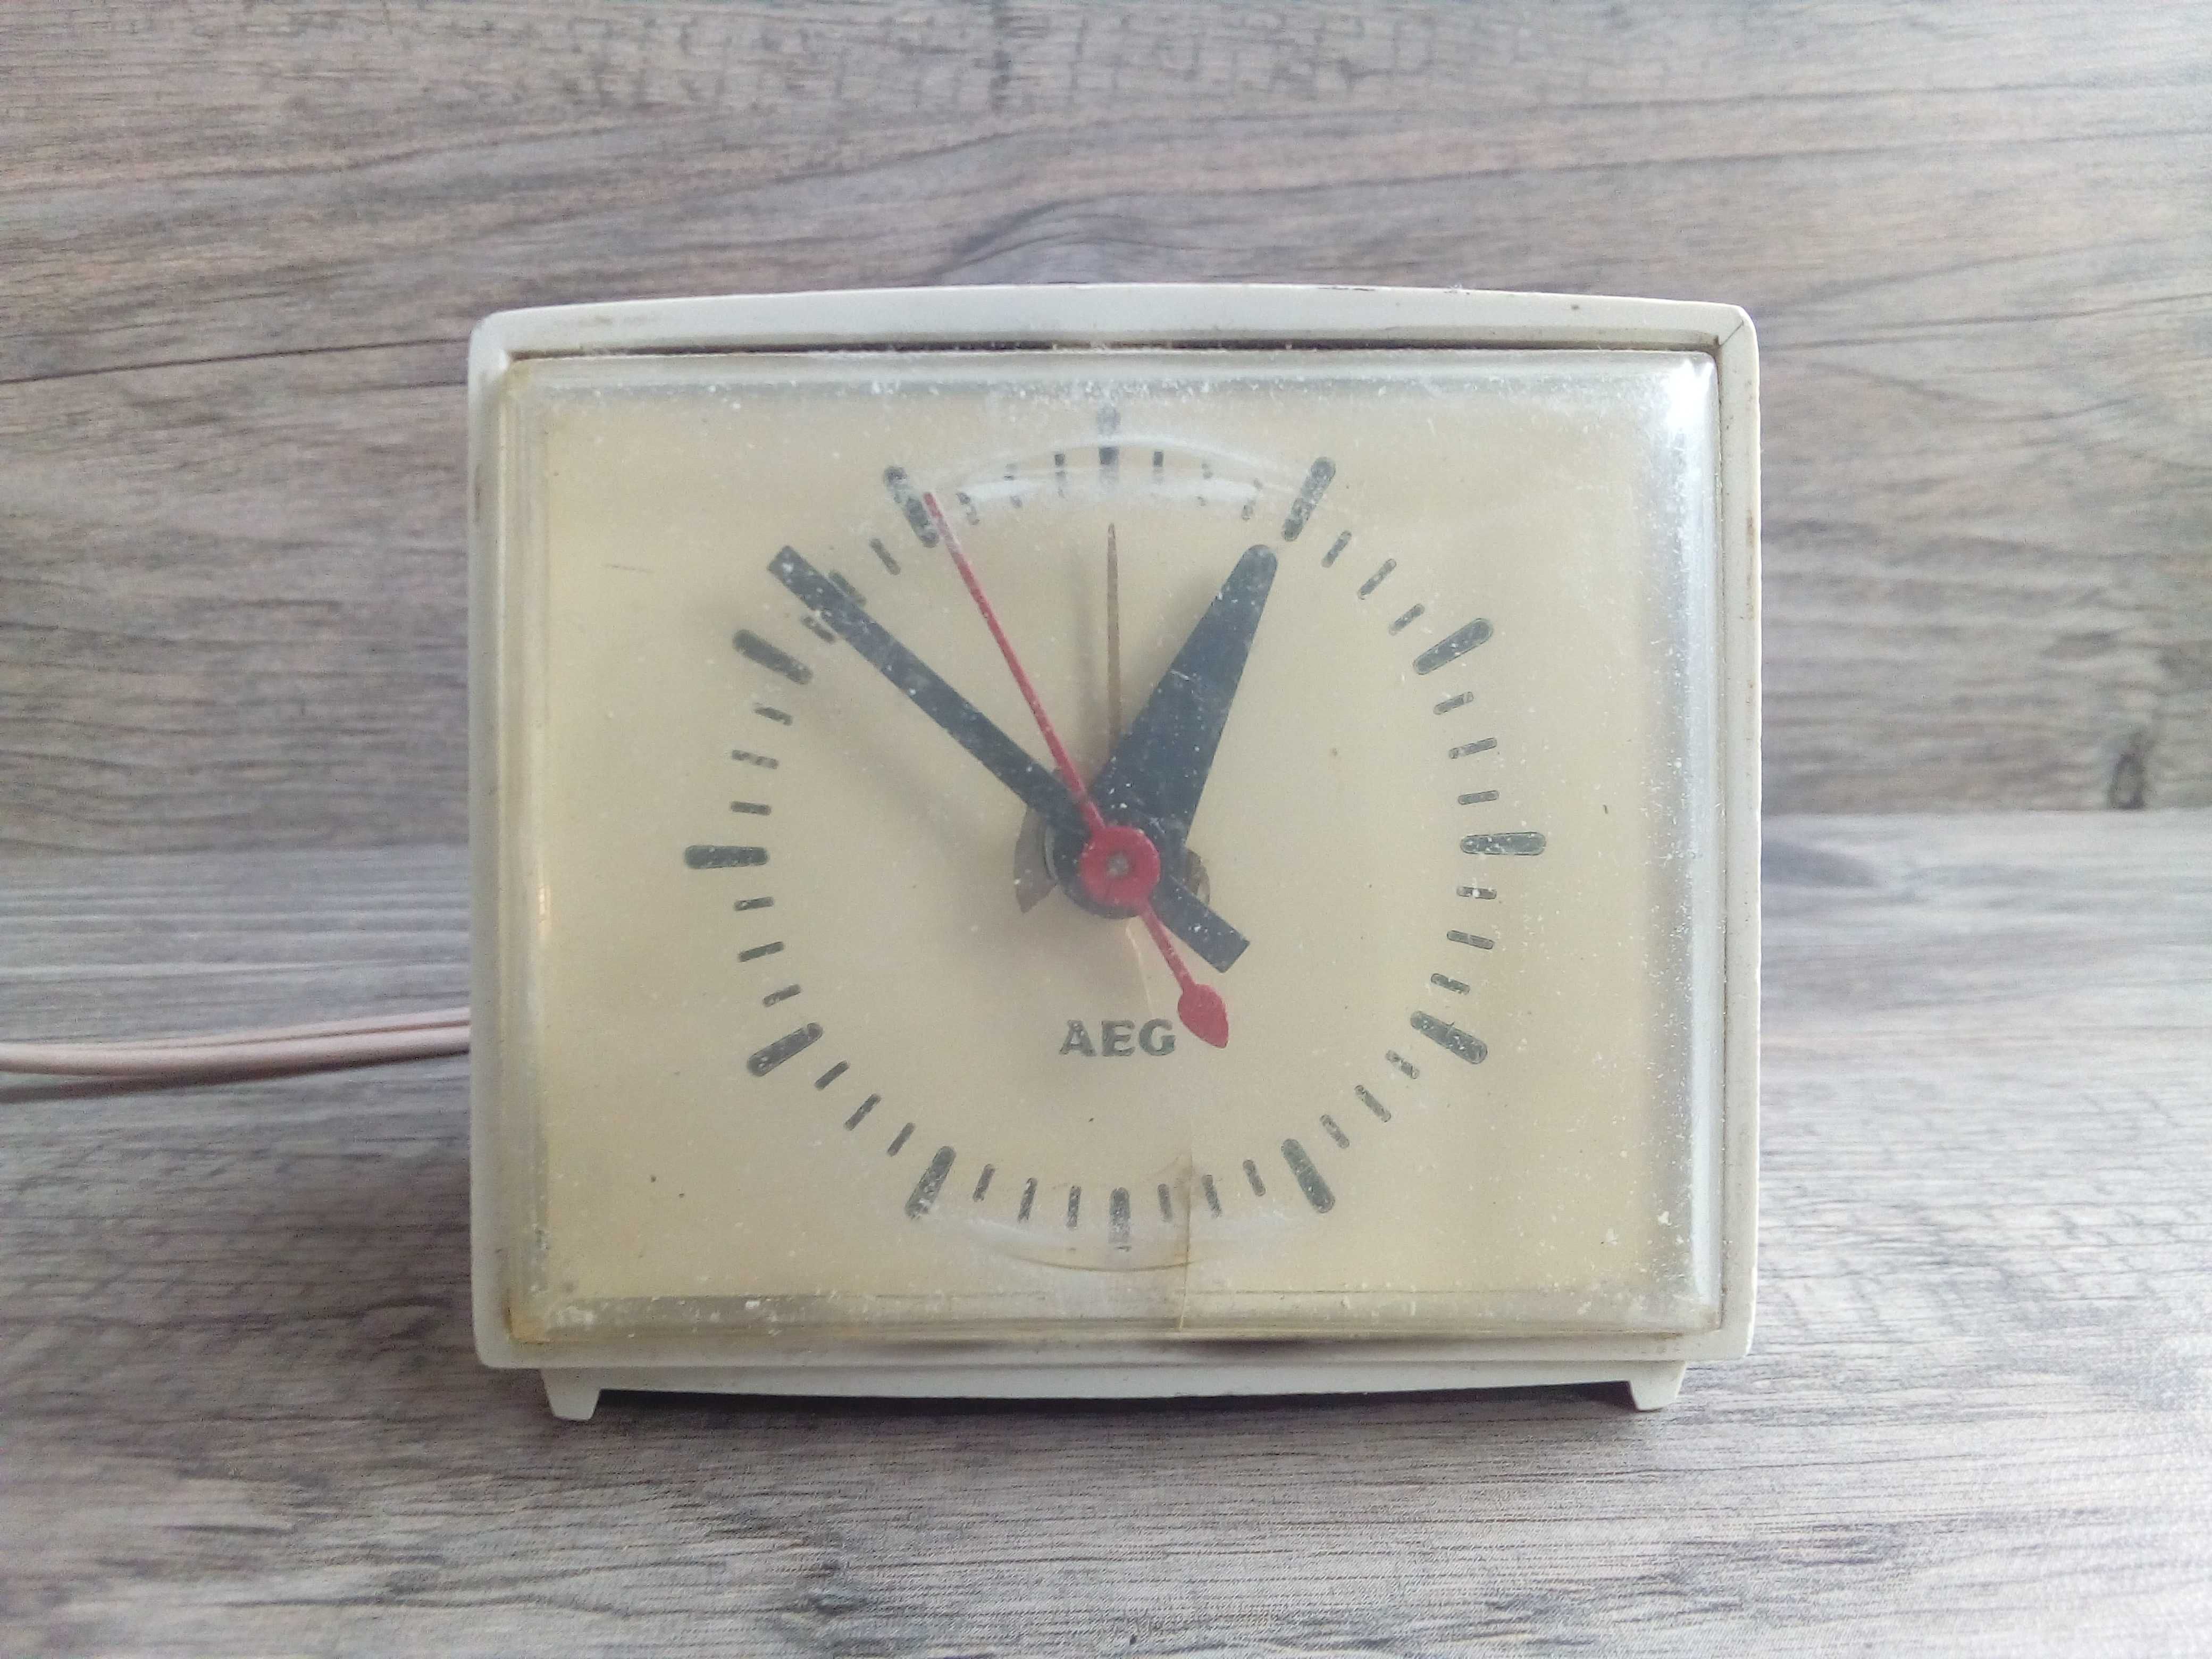 zegar elektryczny aeg made in germany 65zł zamiast 79zł